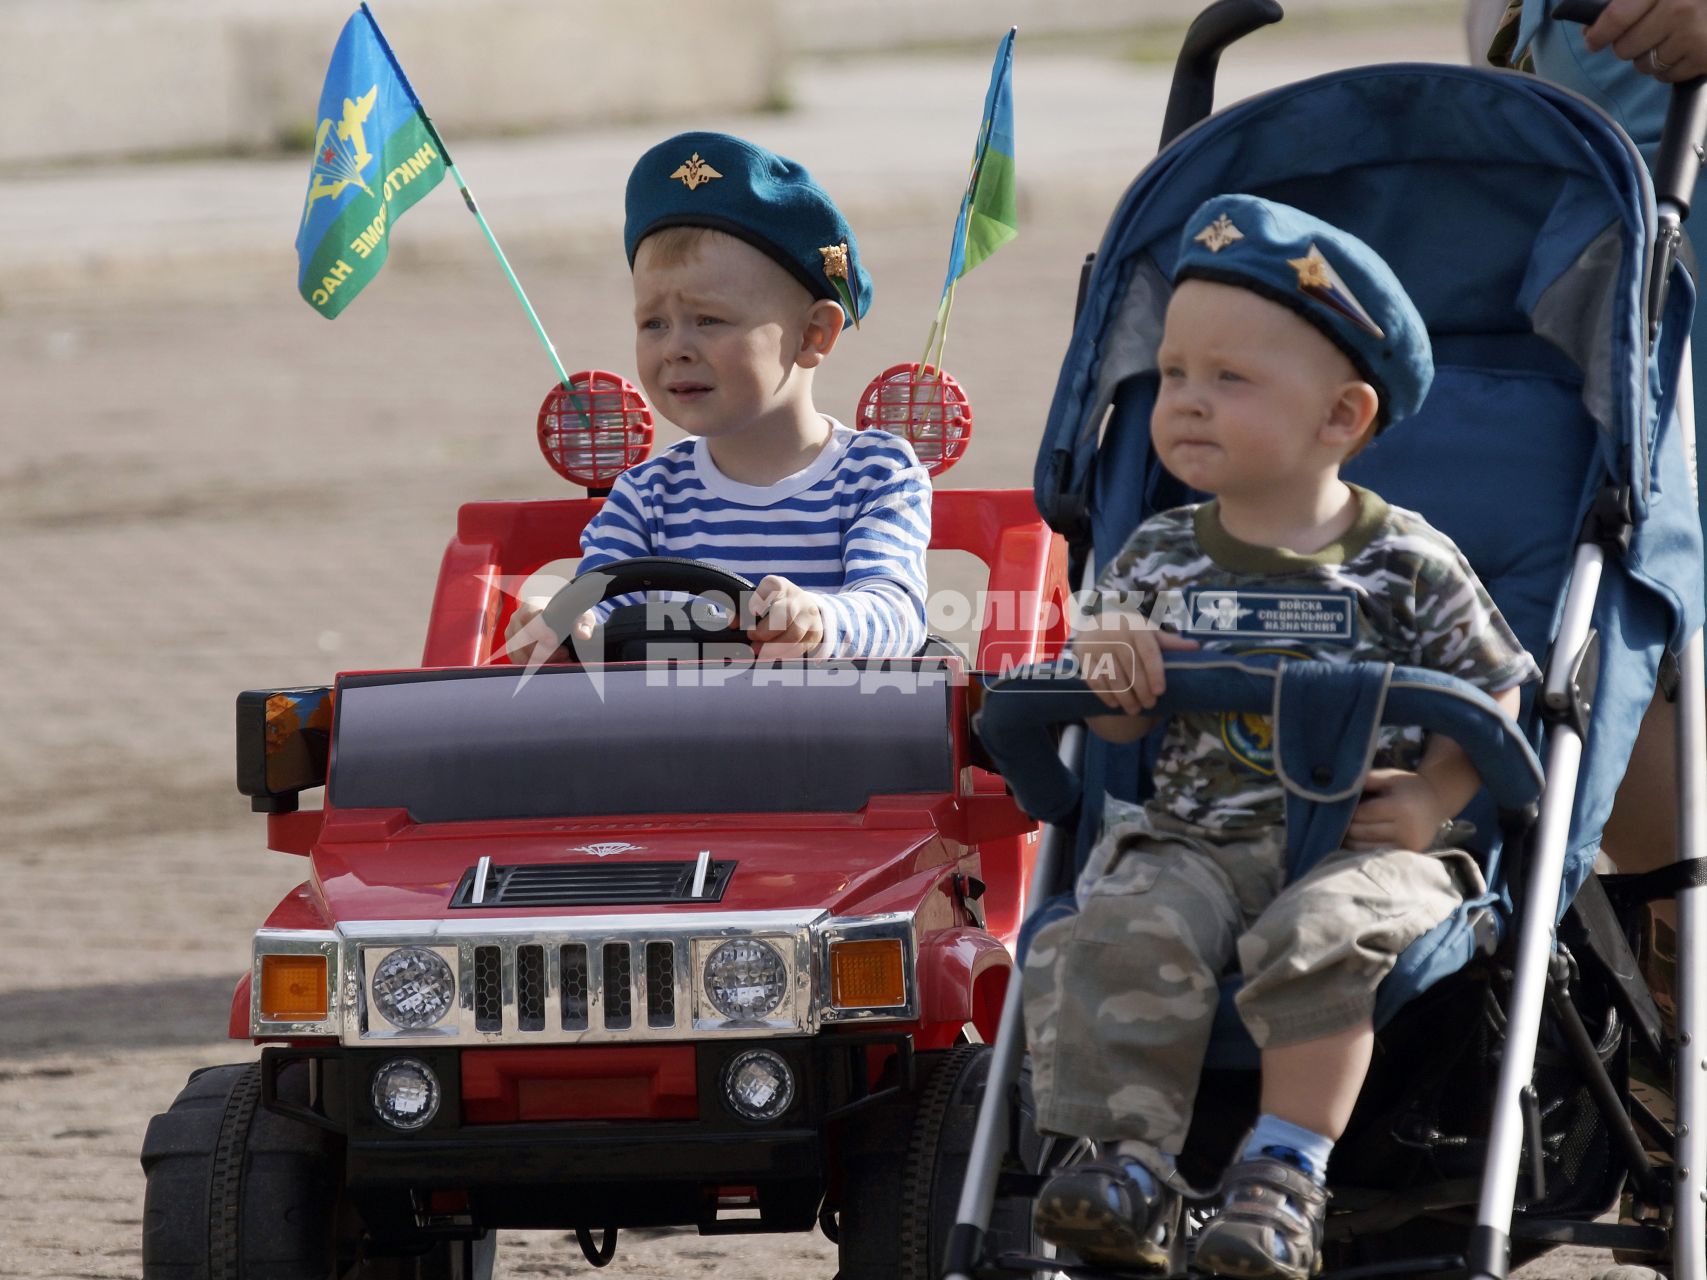 В Екатеринбурге отмечают день ВДВ. На снимке: два ребенка, один в коляске, другой на электромобиле, оба в беретах десантных войск.